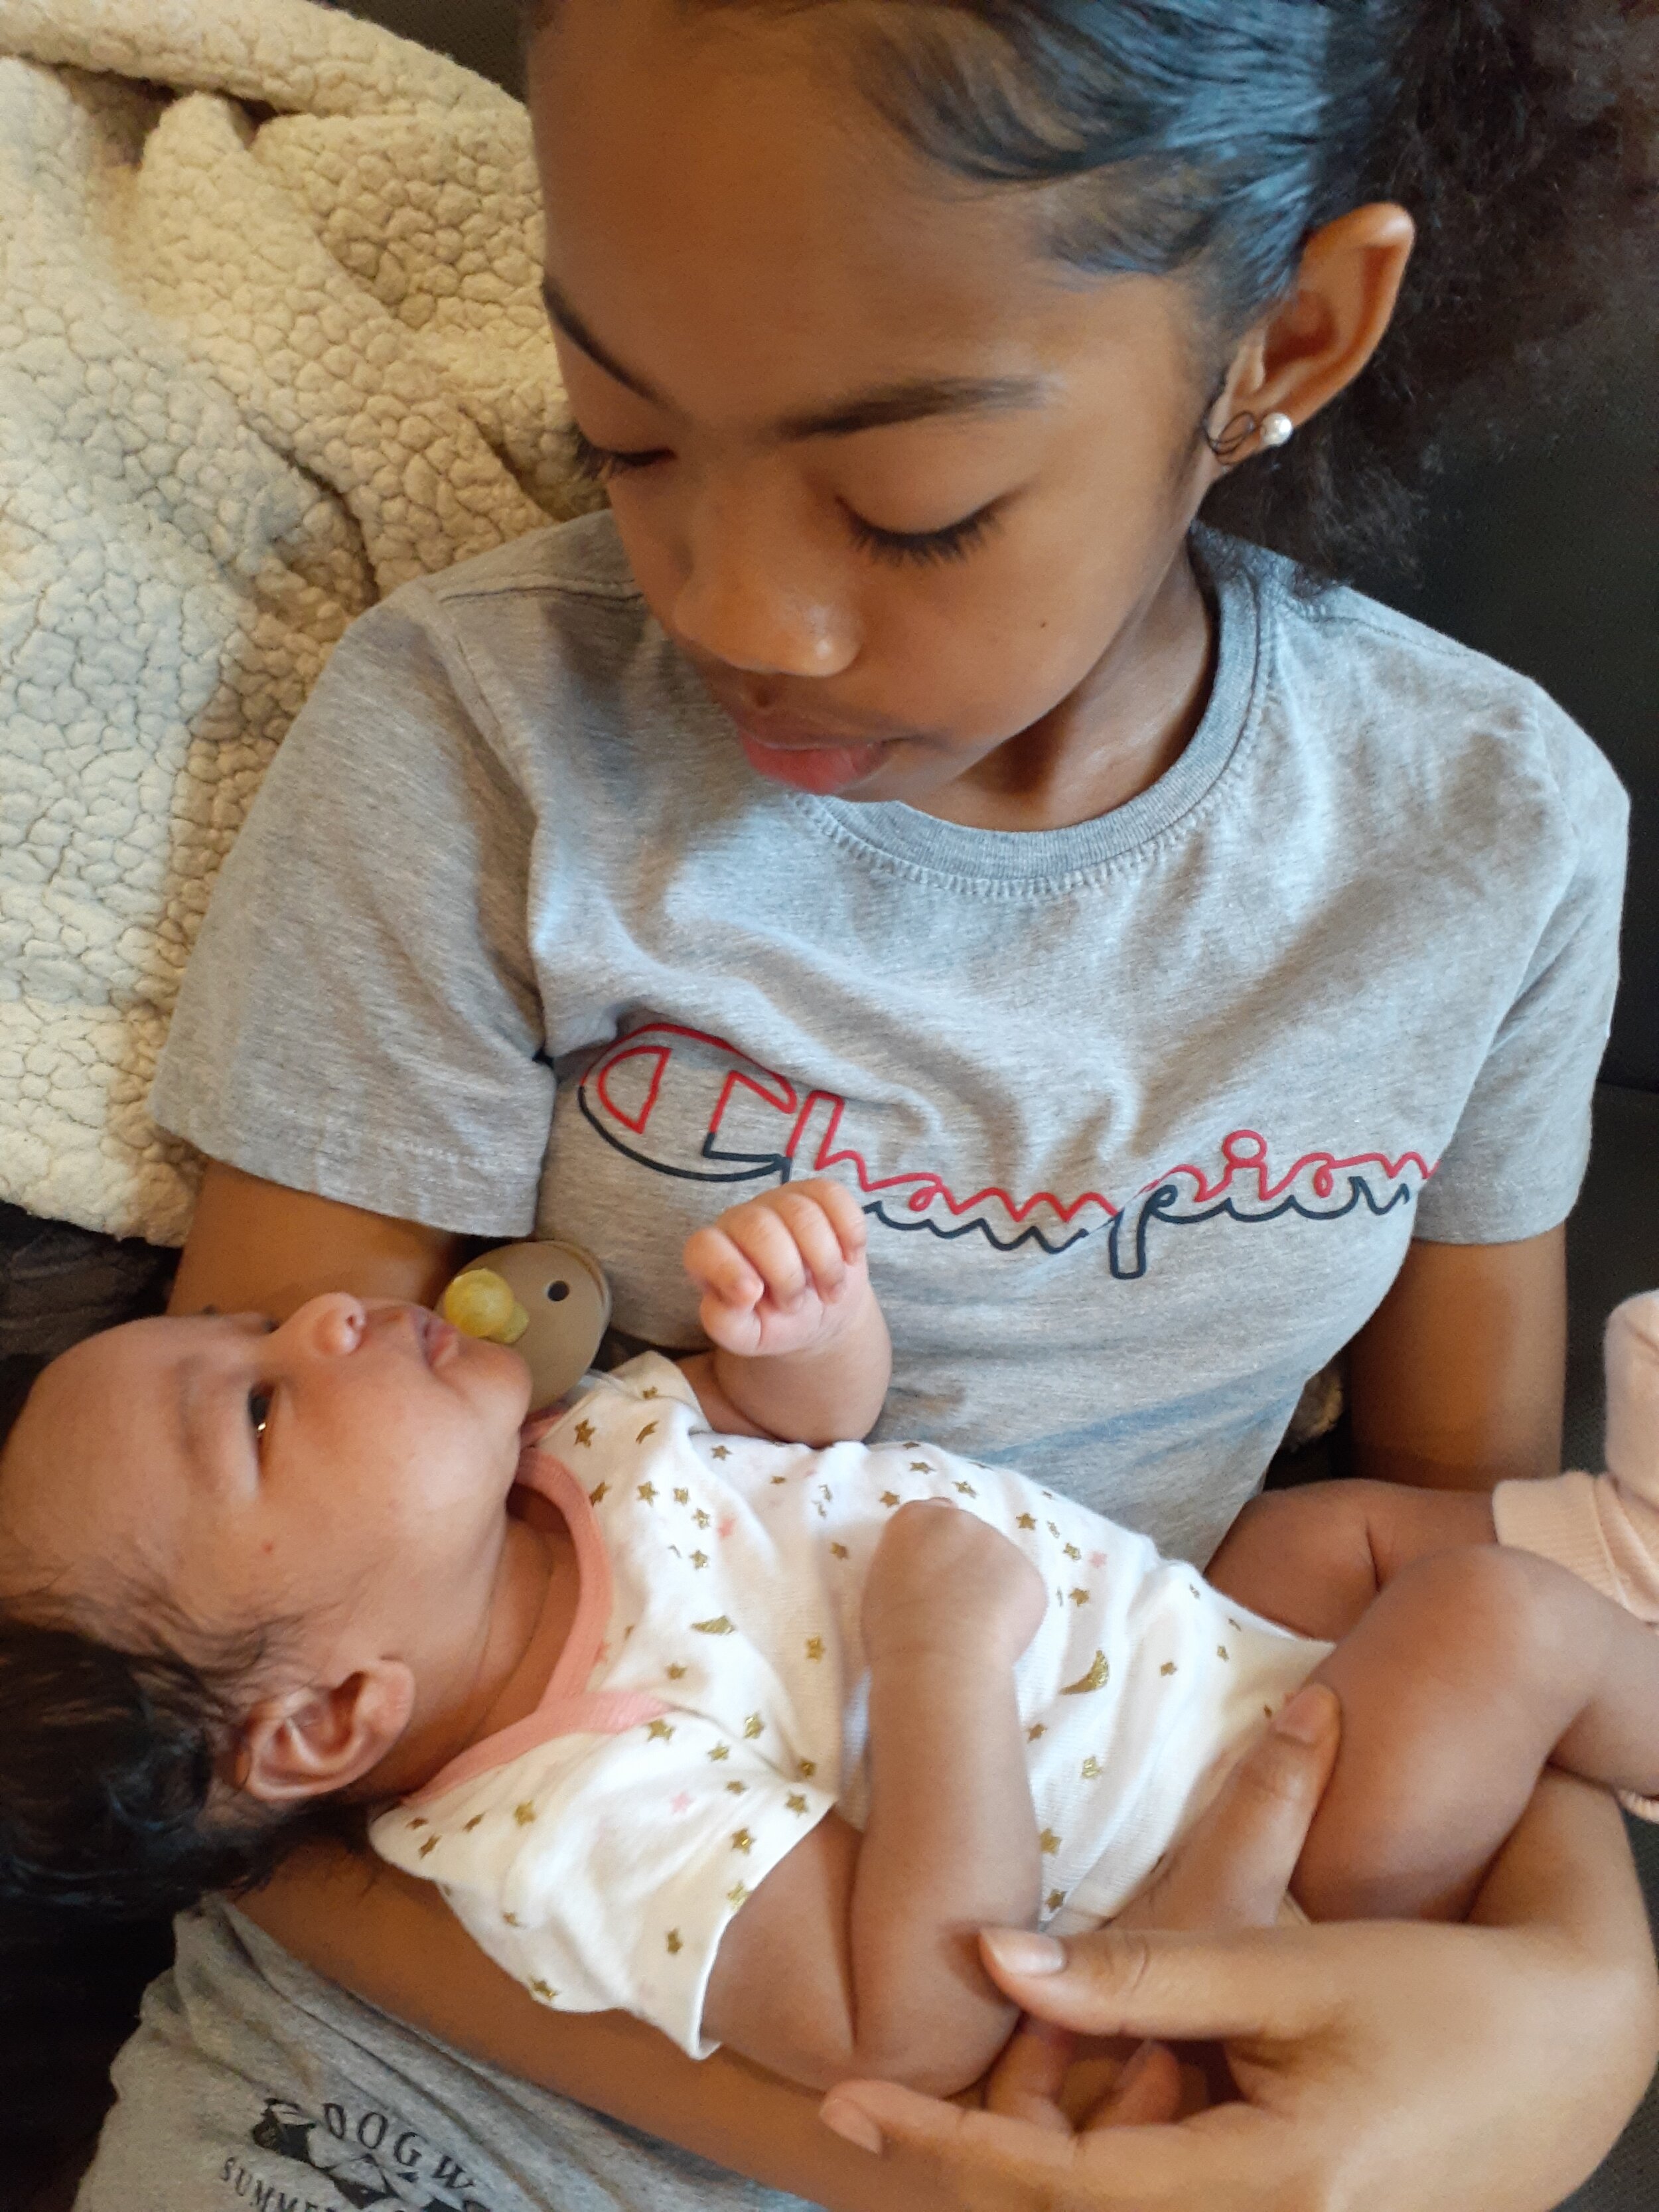 Tina's daughter &amp; newborn niece (2020)